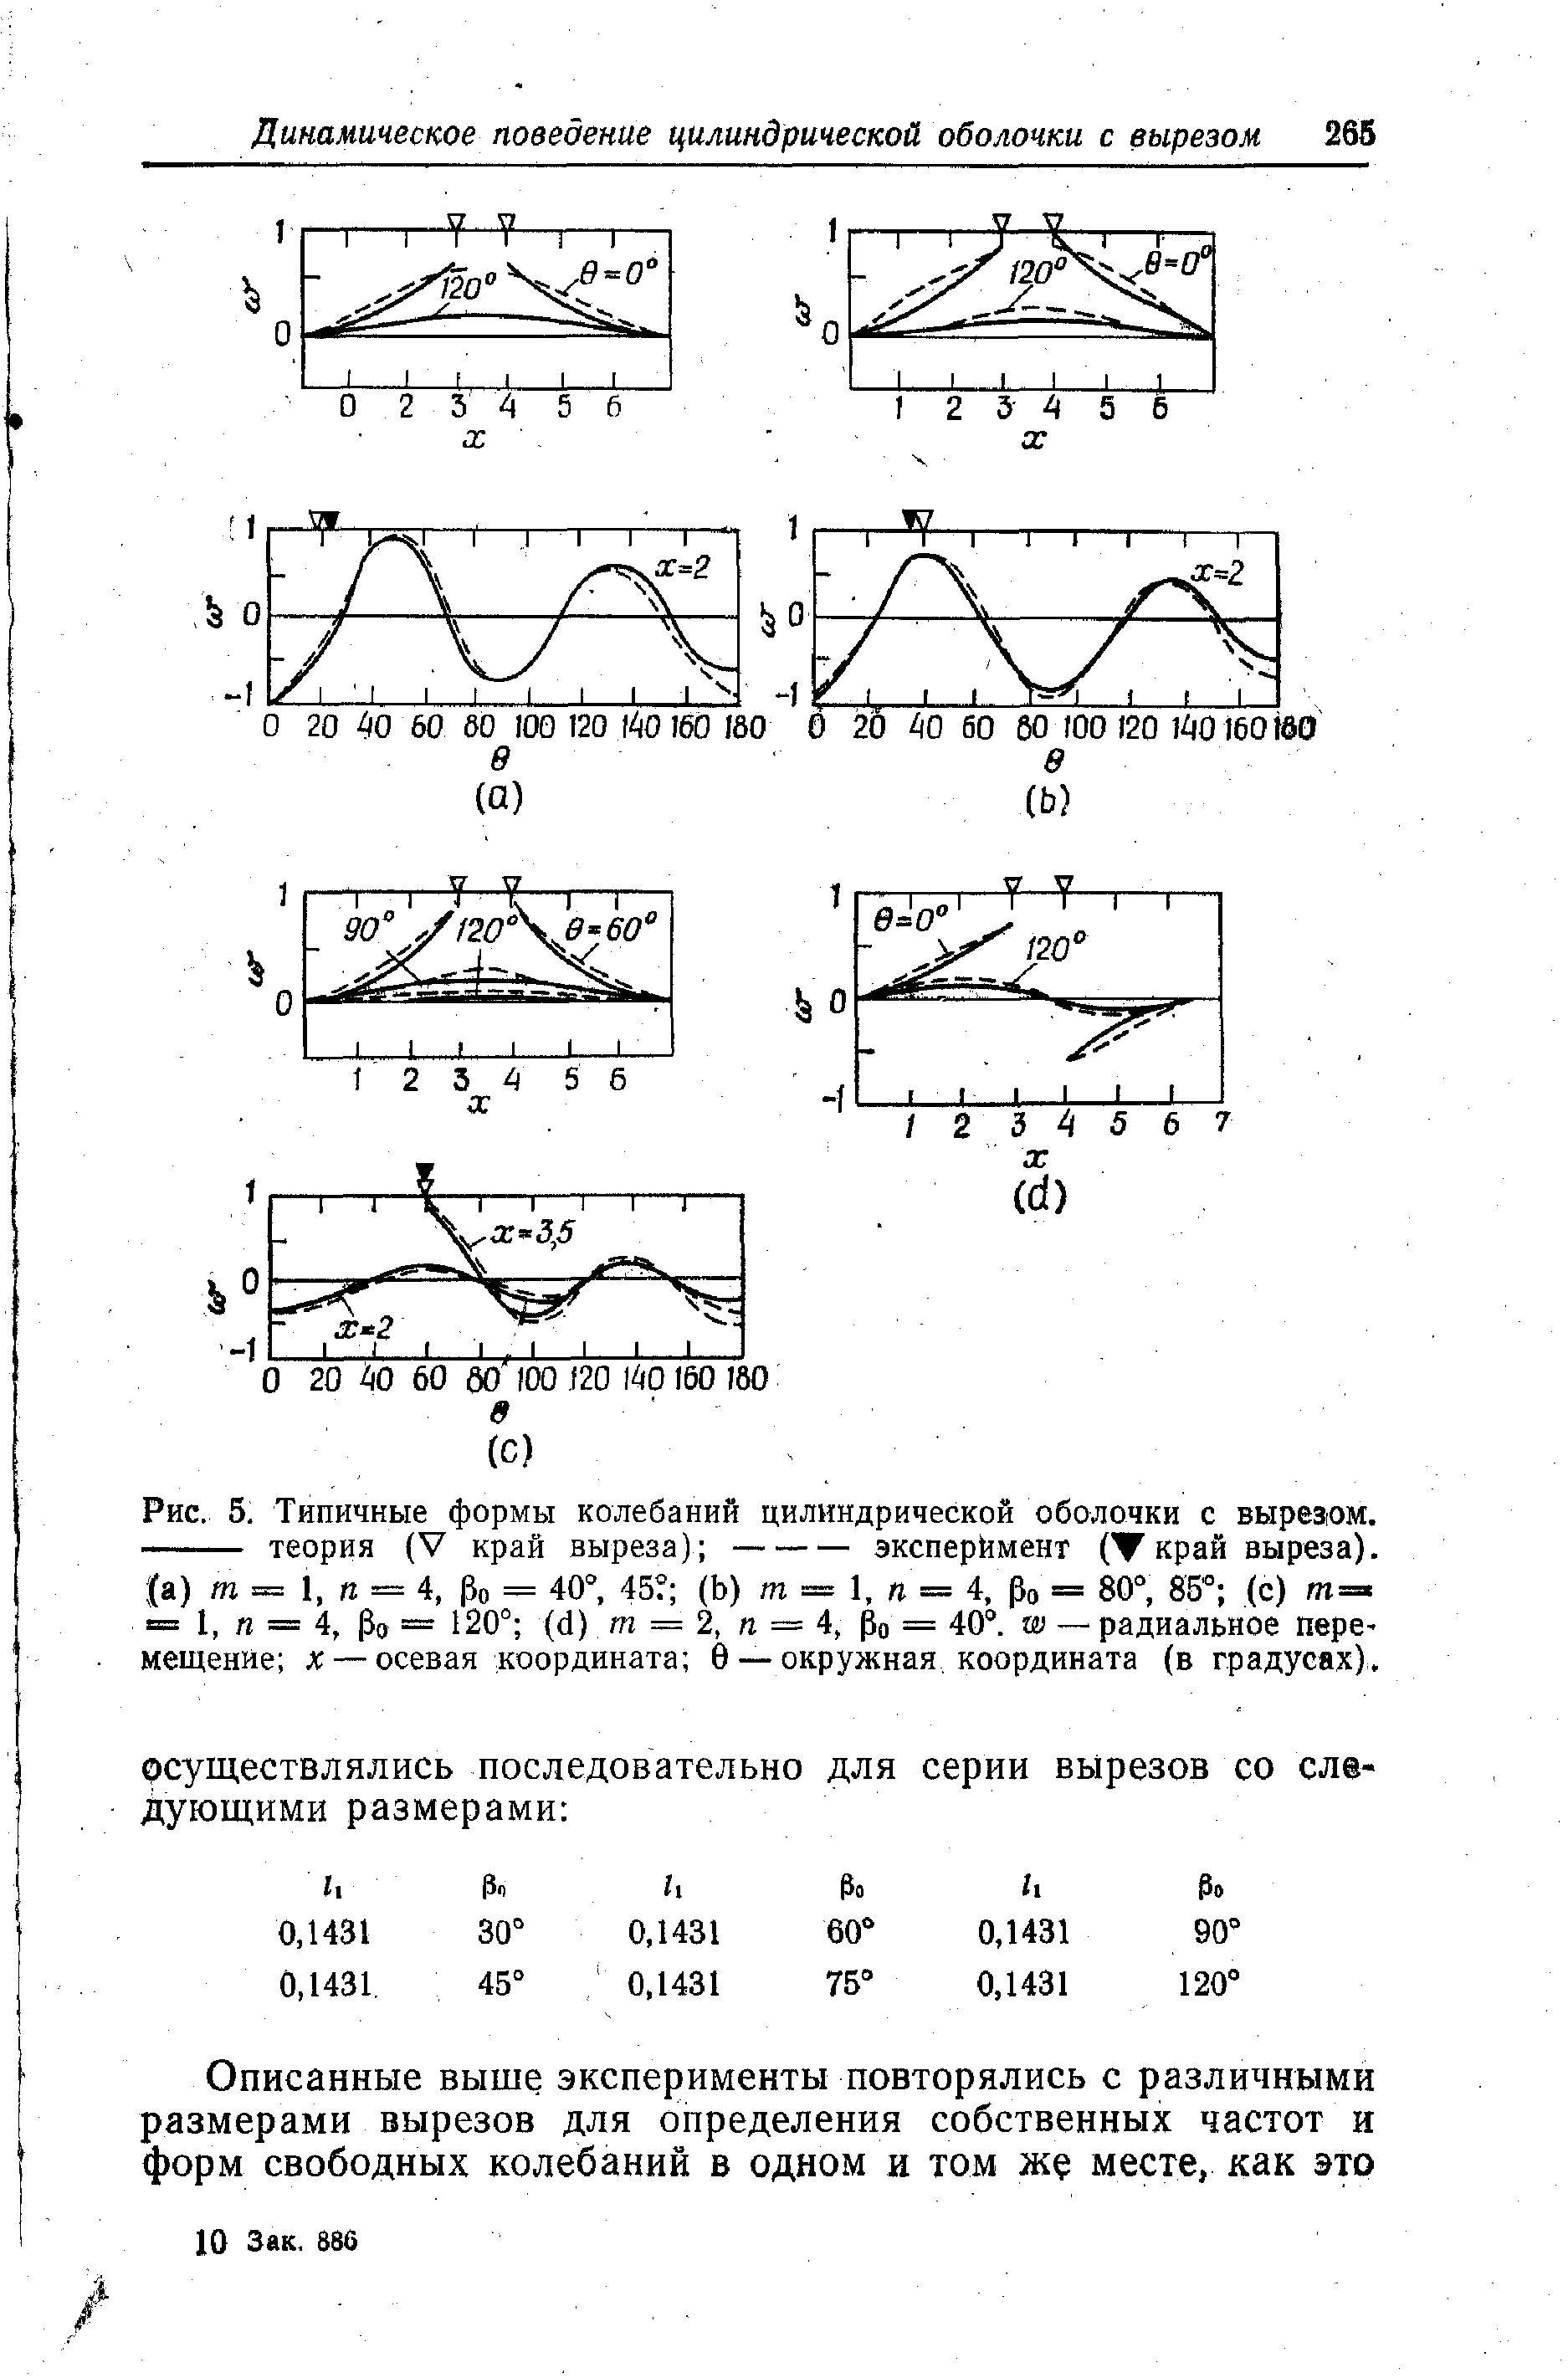 Рис. 5, Типичные формы колебаний <a href="/info/7003">цилиндрической оболочки</a> с выреаом.
